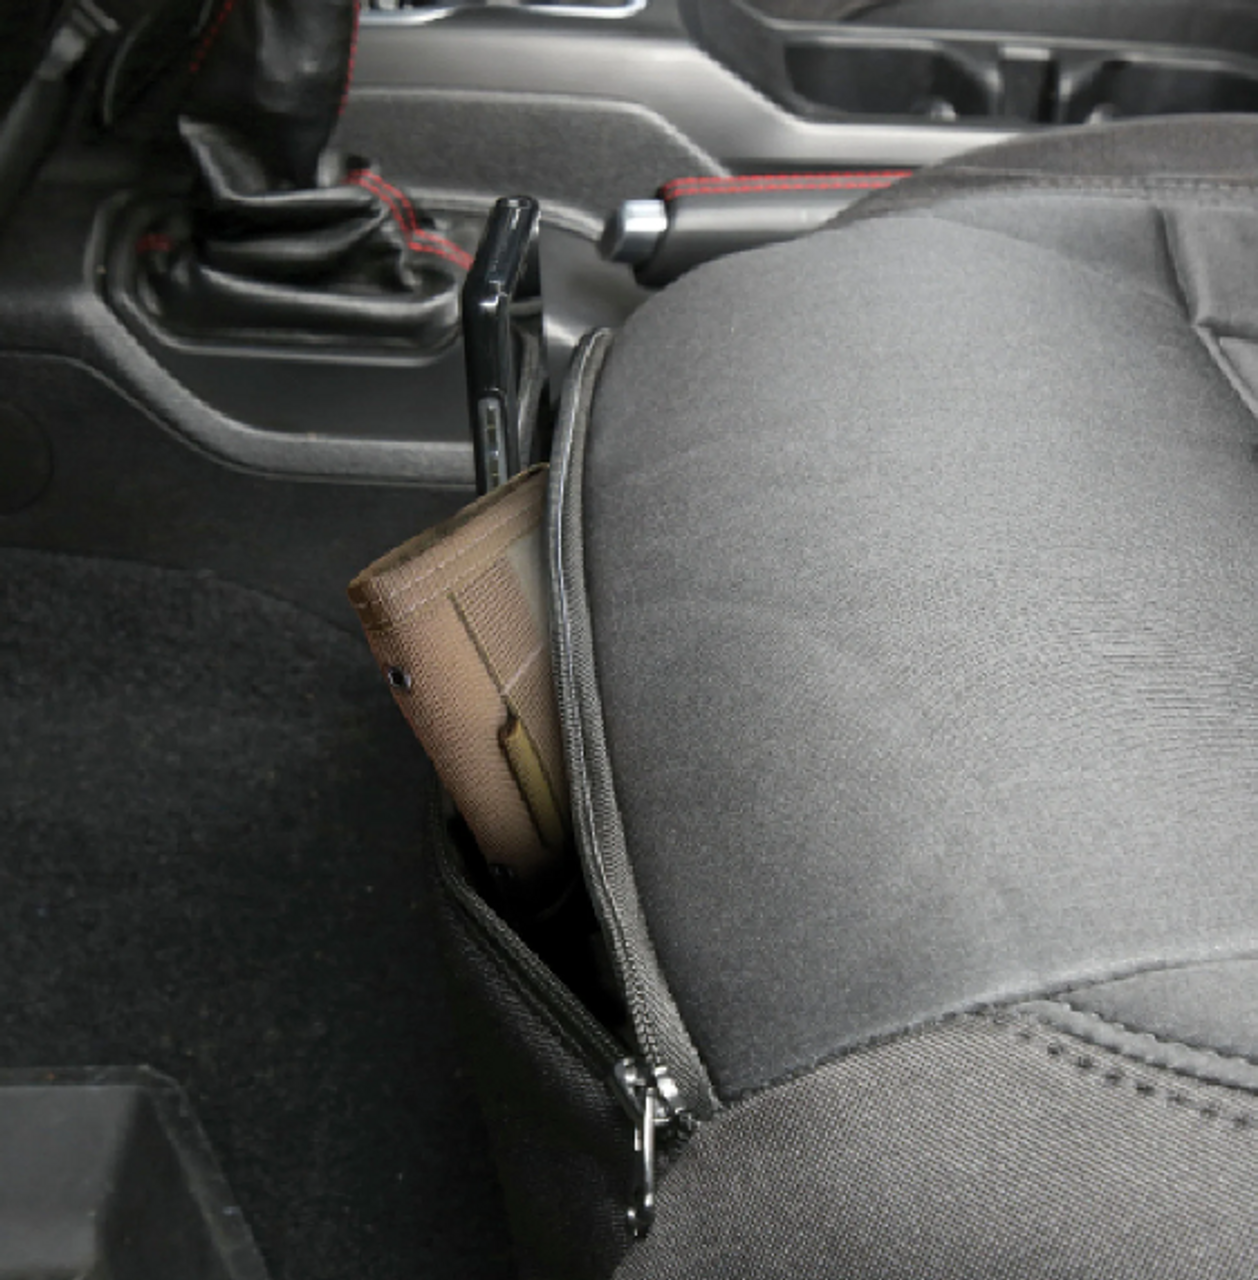 Smittybilt 577125 Gen2 Neoprene Seat Cover Set in Tan/Black for Jeep Wrangler JL 4 Door 2018+